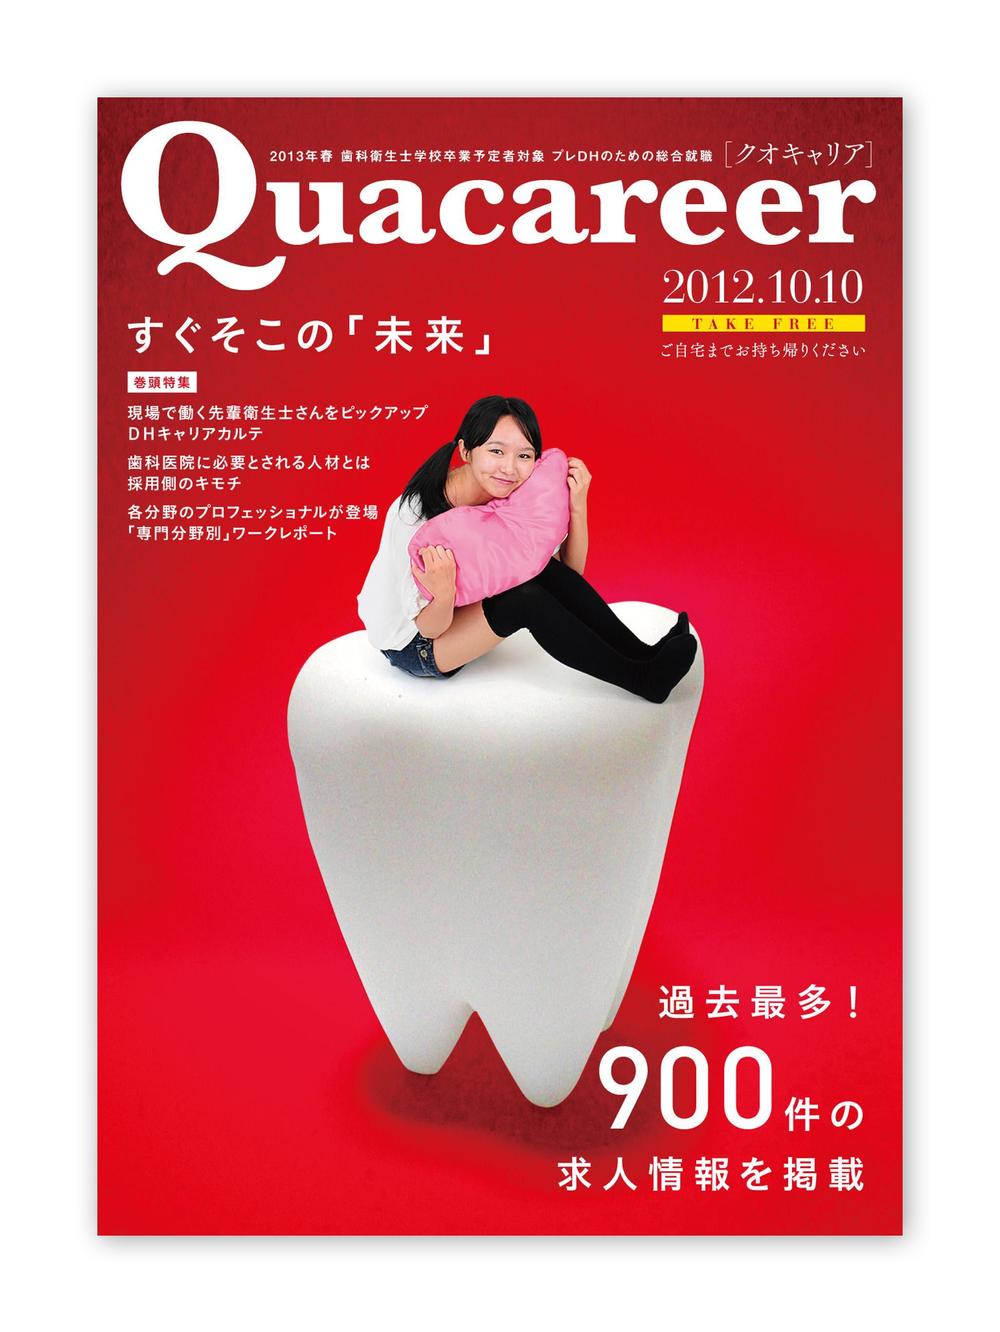 歯科衛生士学生向け求人雑誌の表紙デザイン